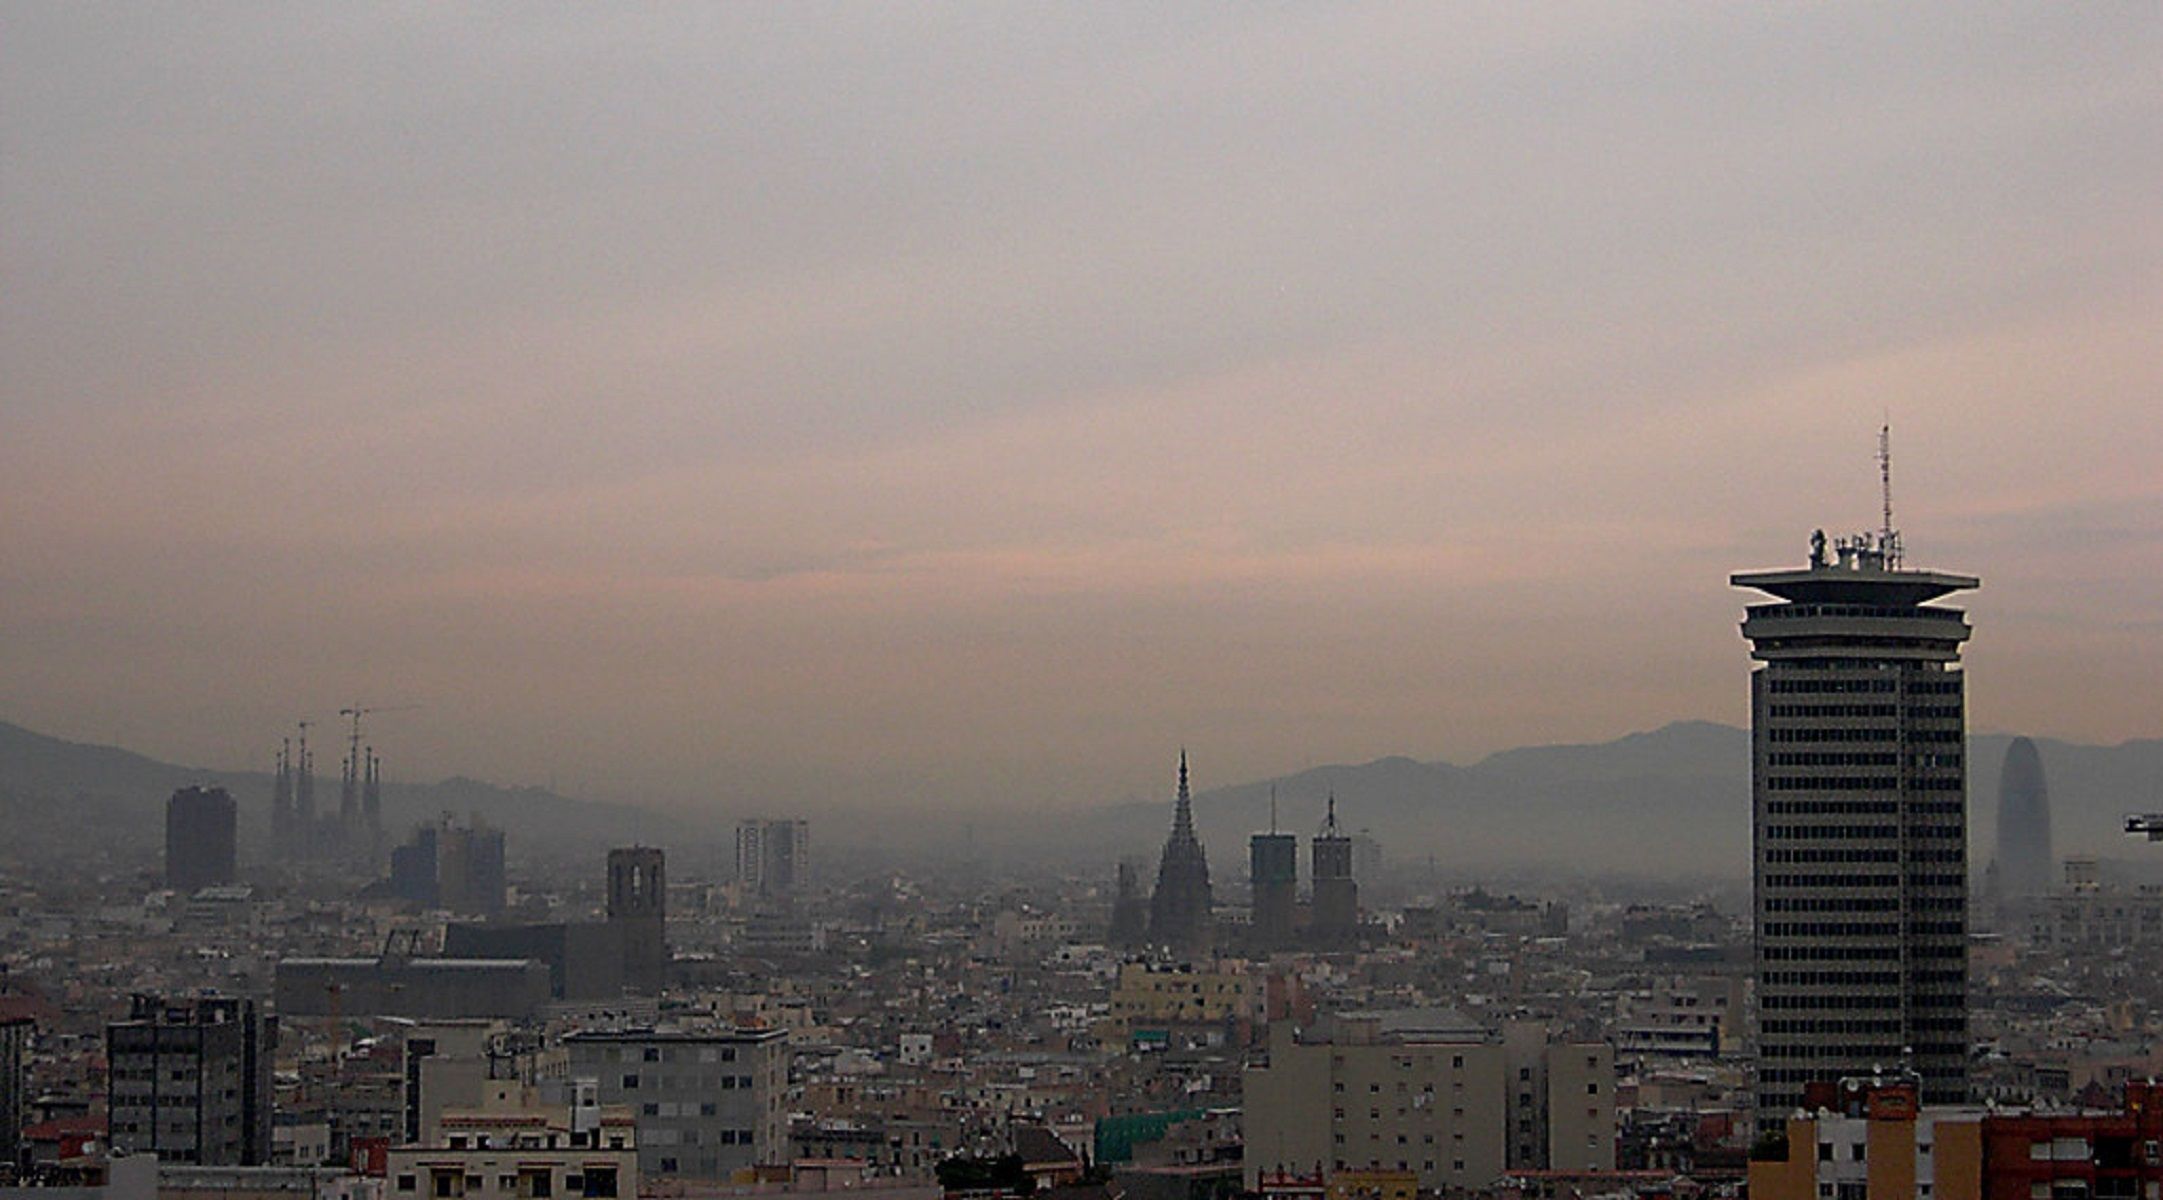 Barcelona contaminación / Flickr